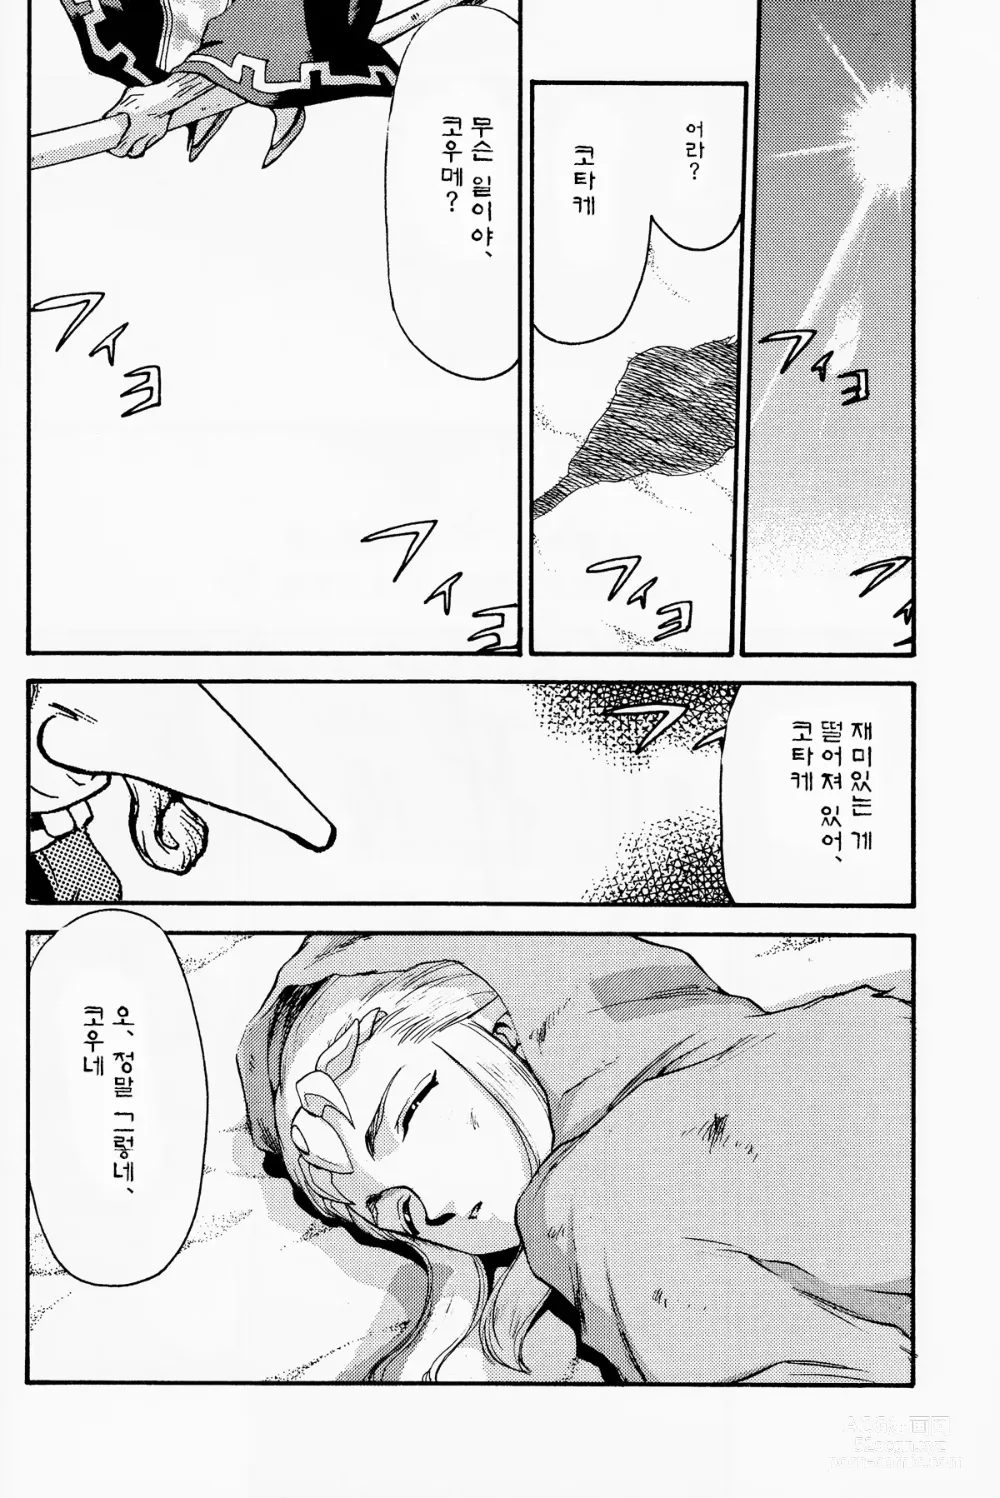 Page 5 of doujinshi NISE Zelda no Densetsu Shinshou